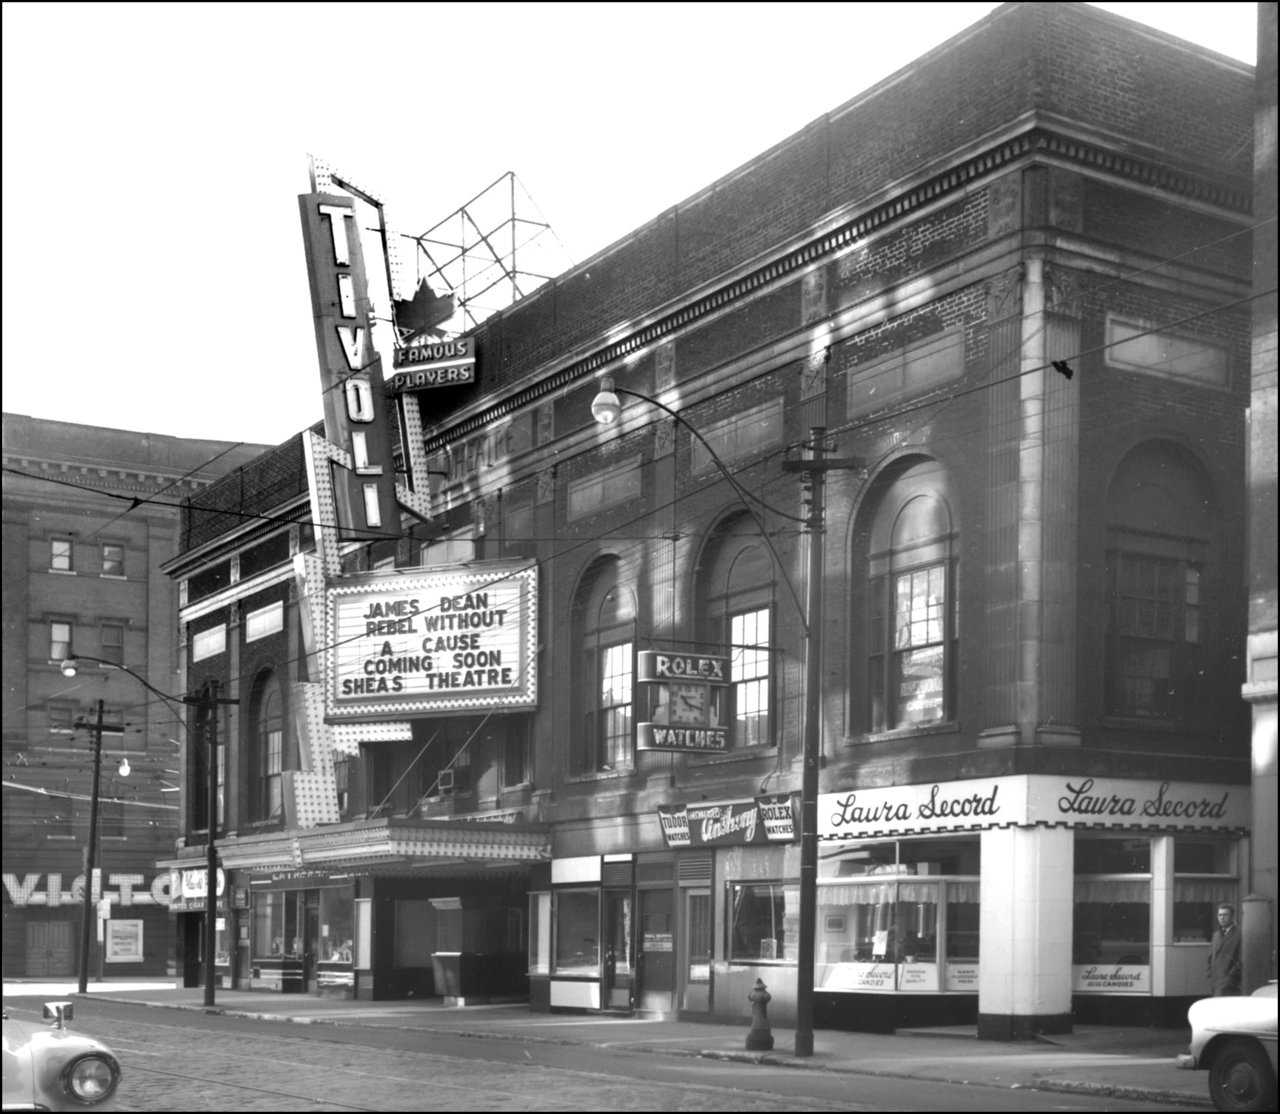 Theatre Richmond St. E. at s.w. cor. Victoria St. 1956 TPL.jpg